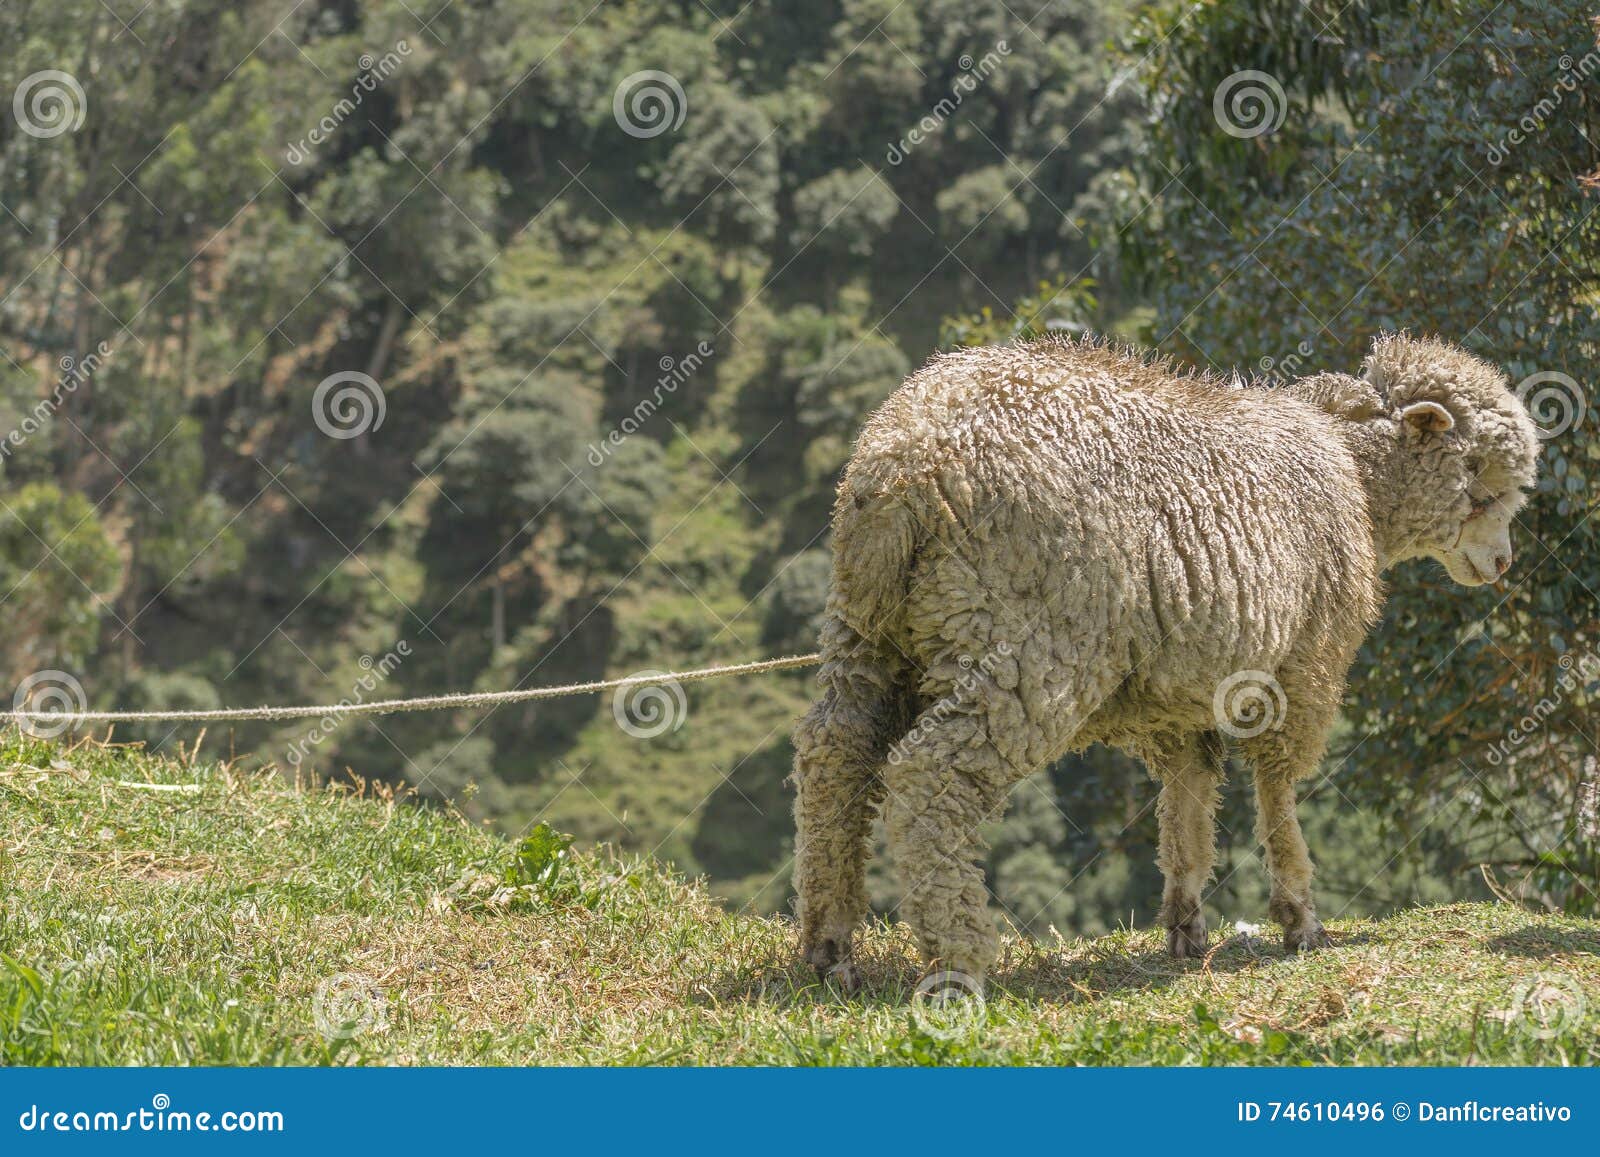 sheep at nature in azuay, ecuador